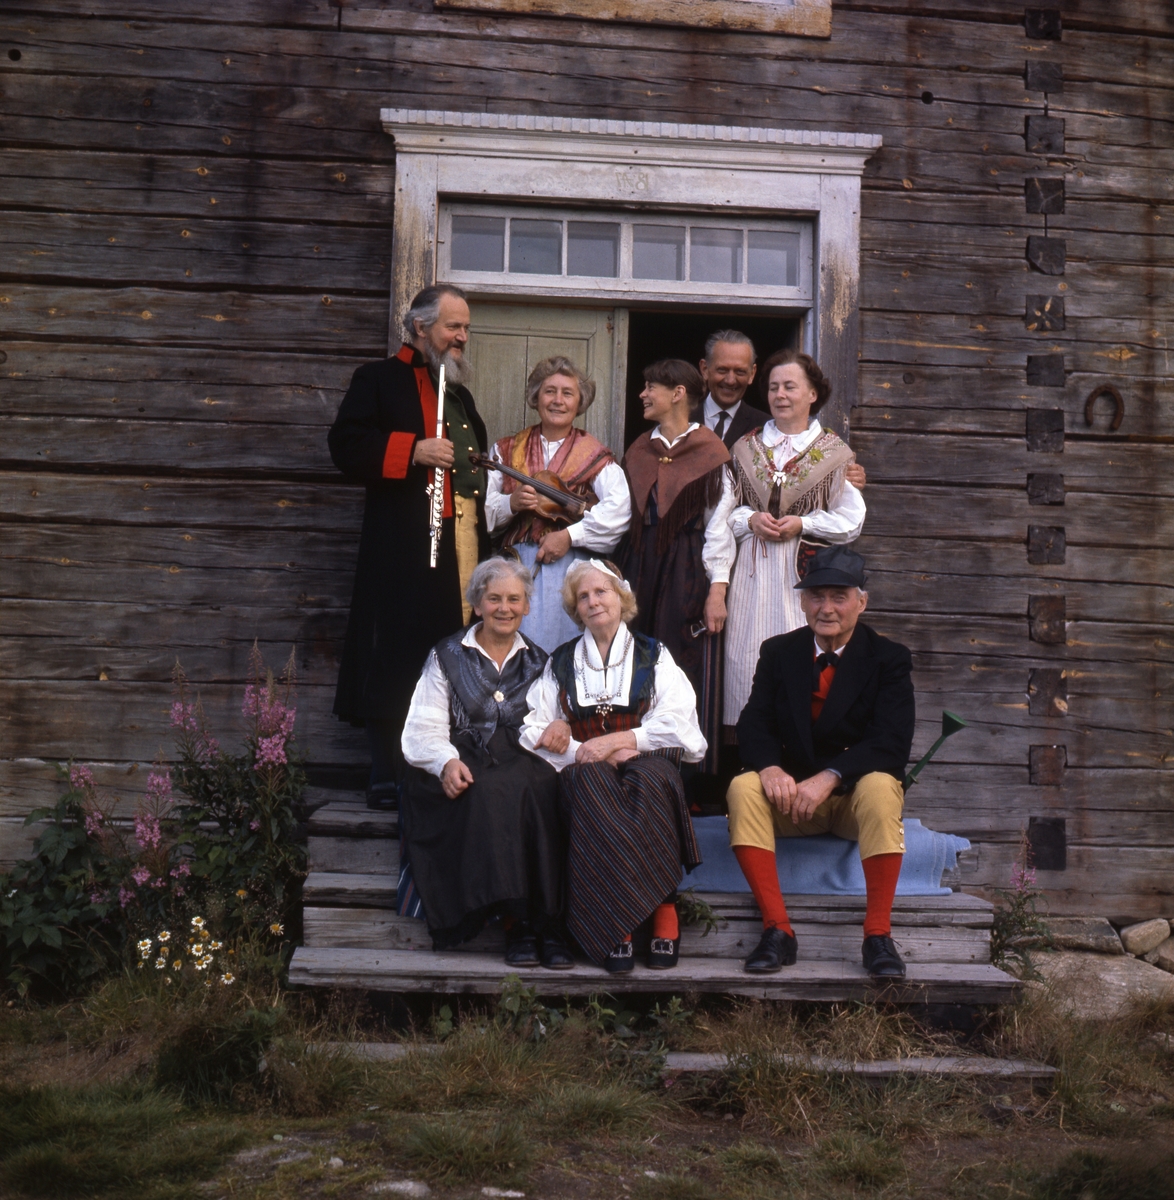 Albert och Lisa Viksten(främre raden från höger), Adéle Mickelsson (bakre raden till höger) med flera ute på en trappa till en timmerbyggnad. De är klädda i hembygdsdräkter. Några håller i musikinstrument.